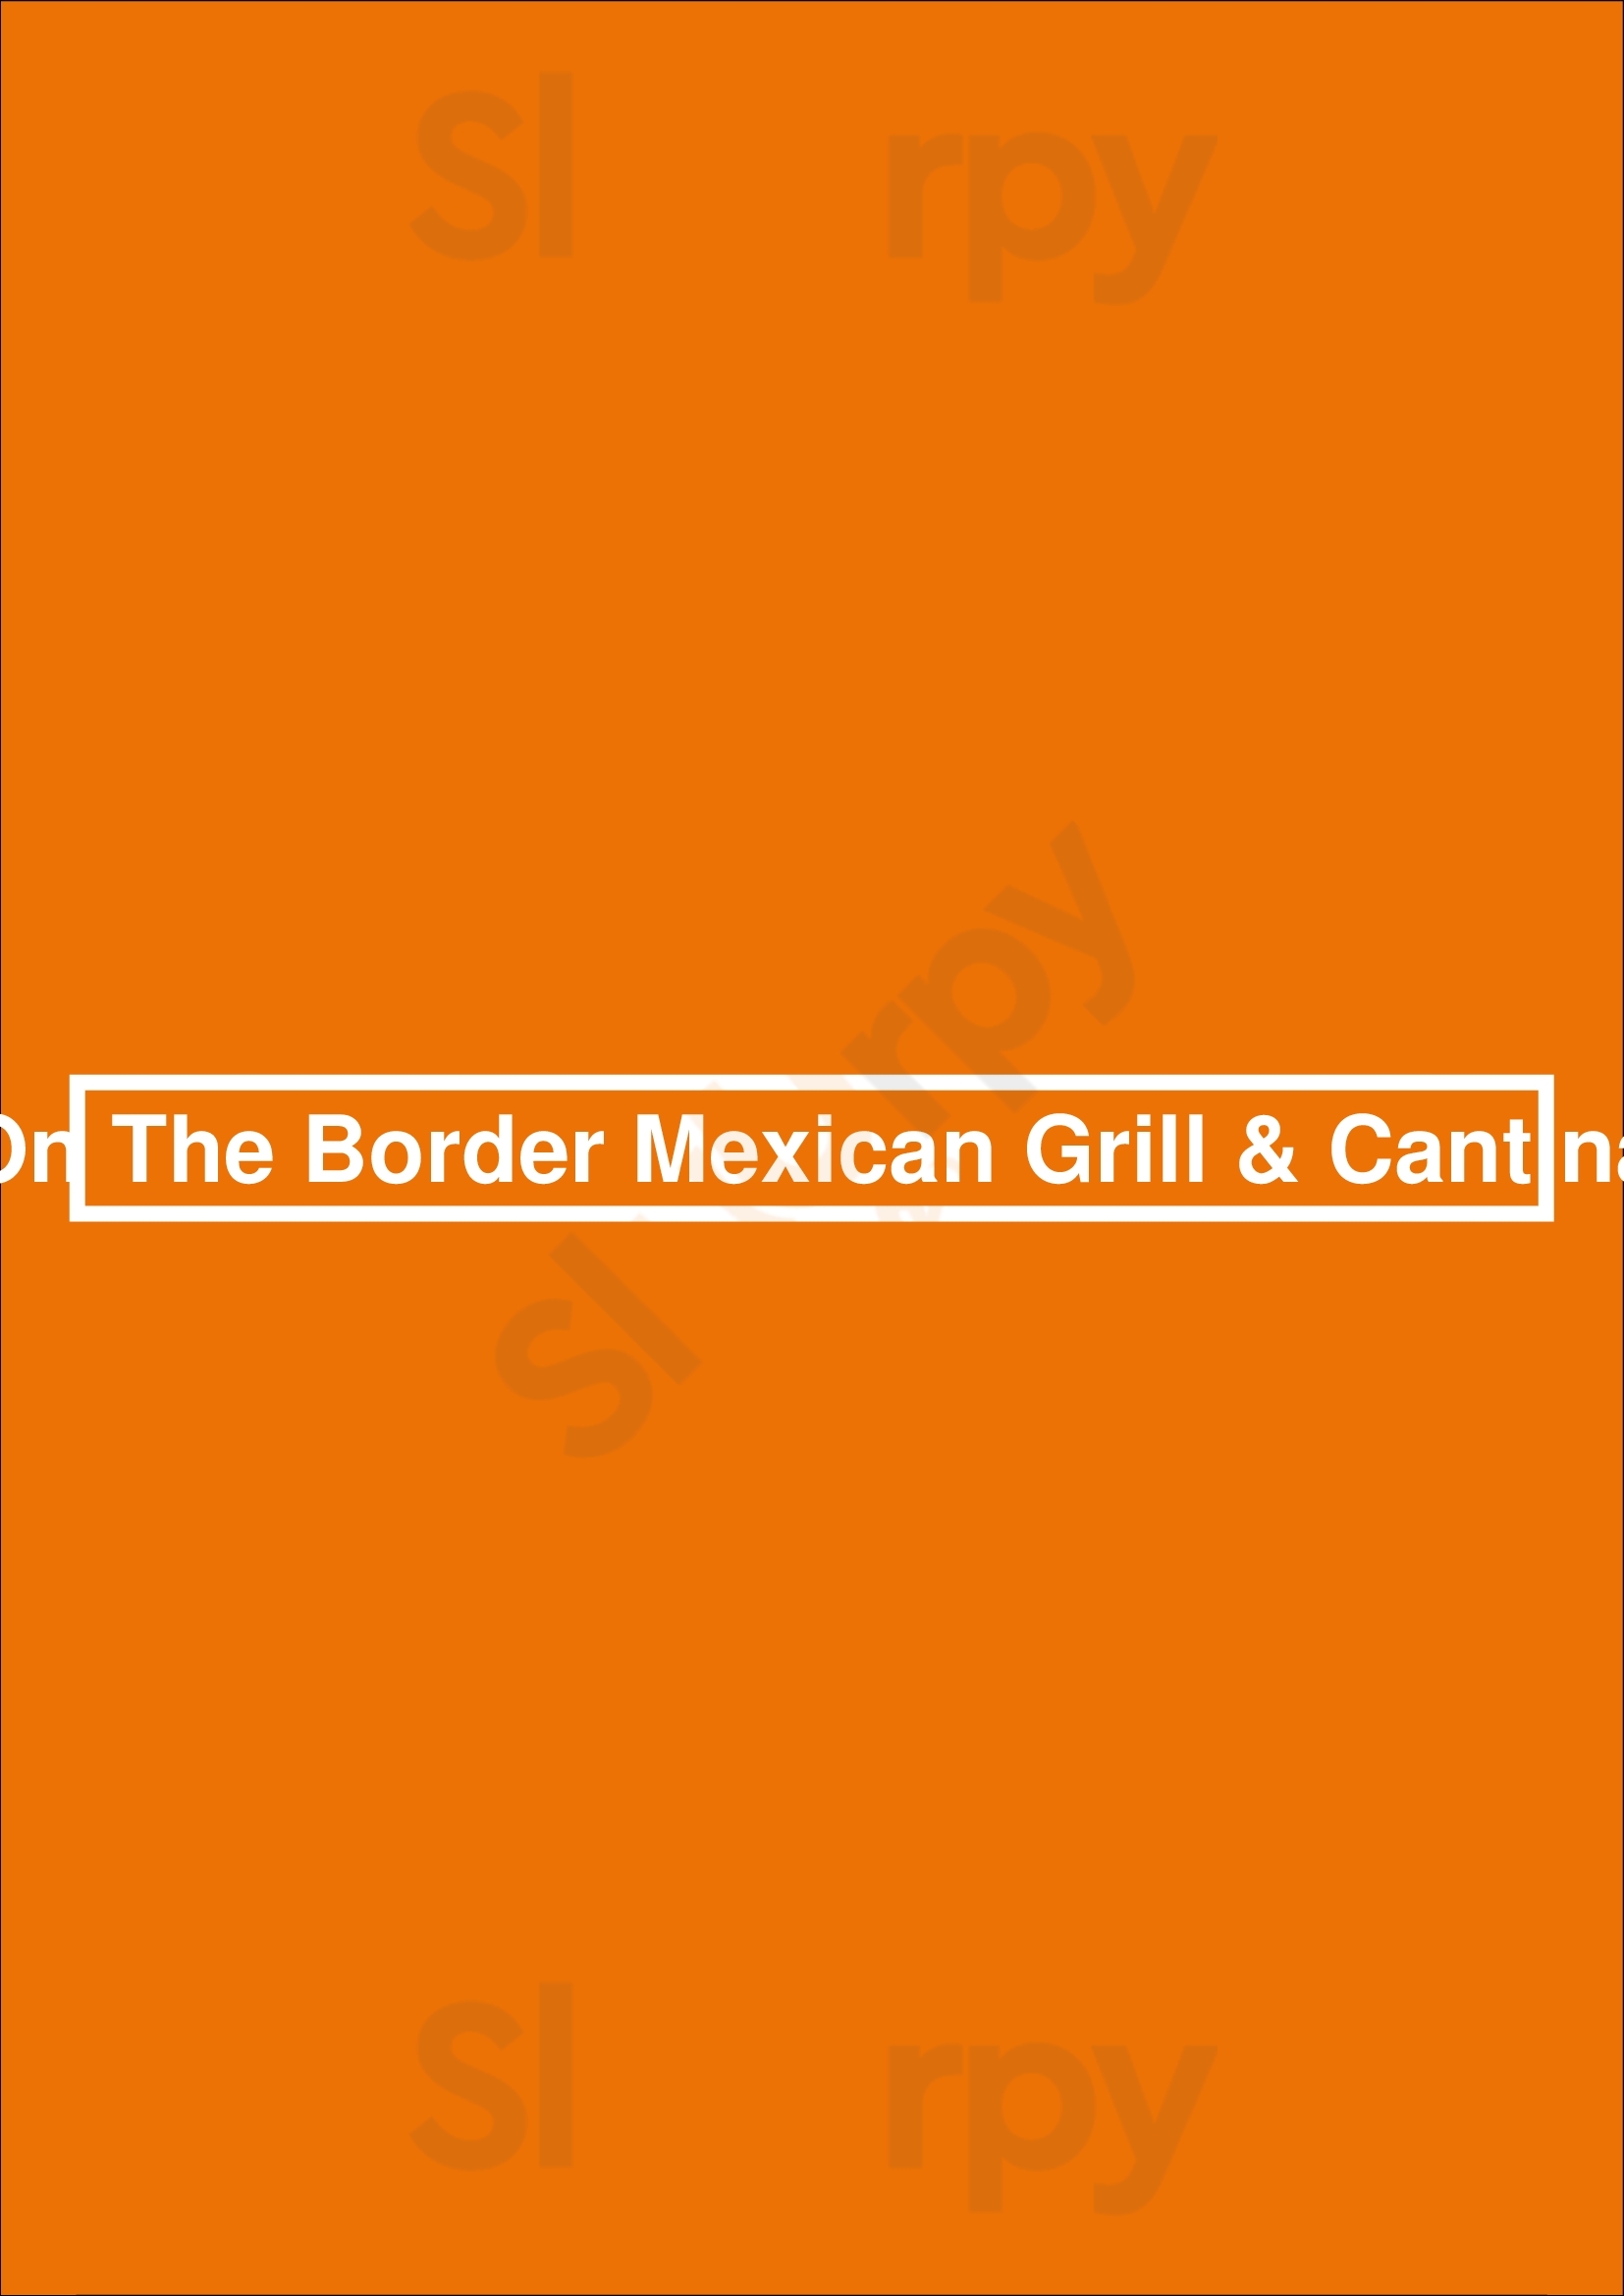 On The Border Mexican Grill & Cantina Elkridge Menu - 1